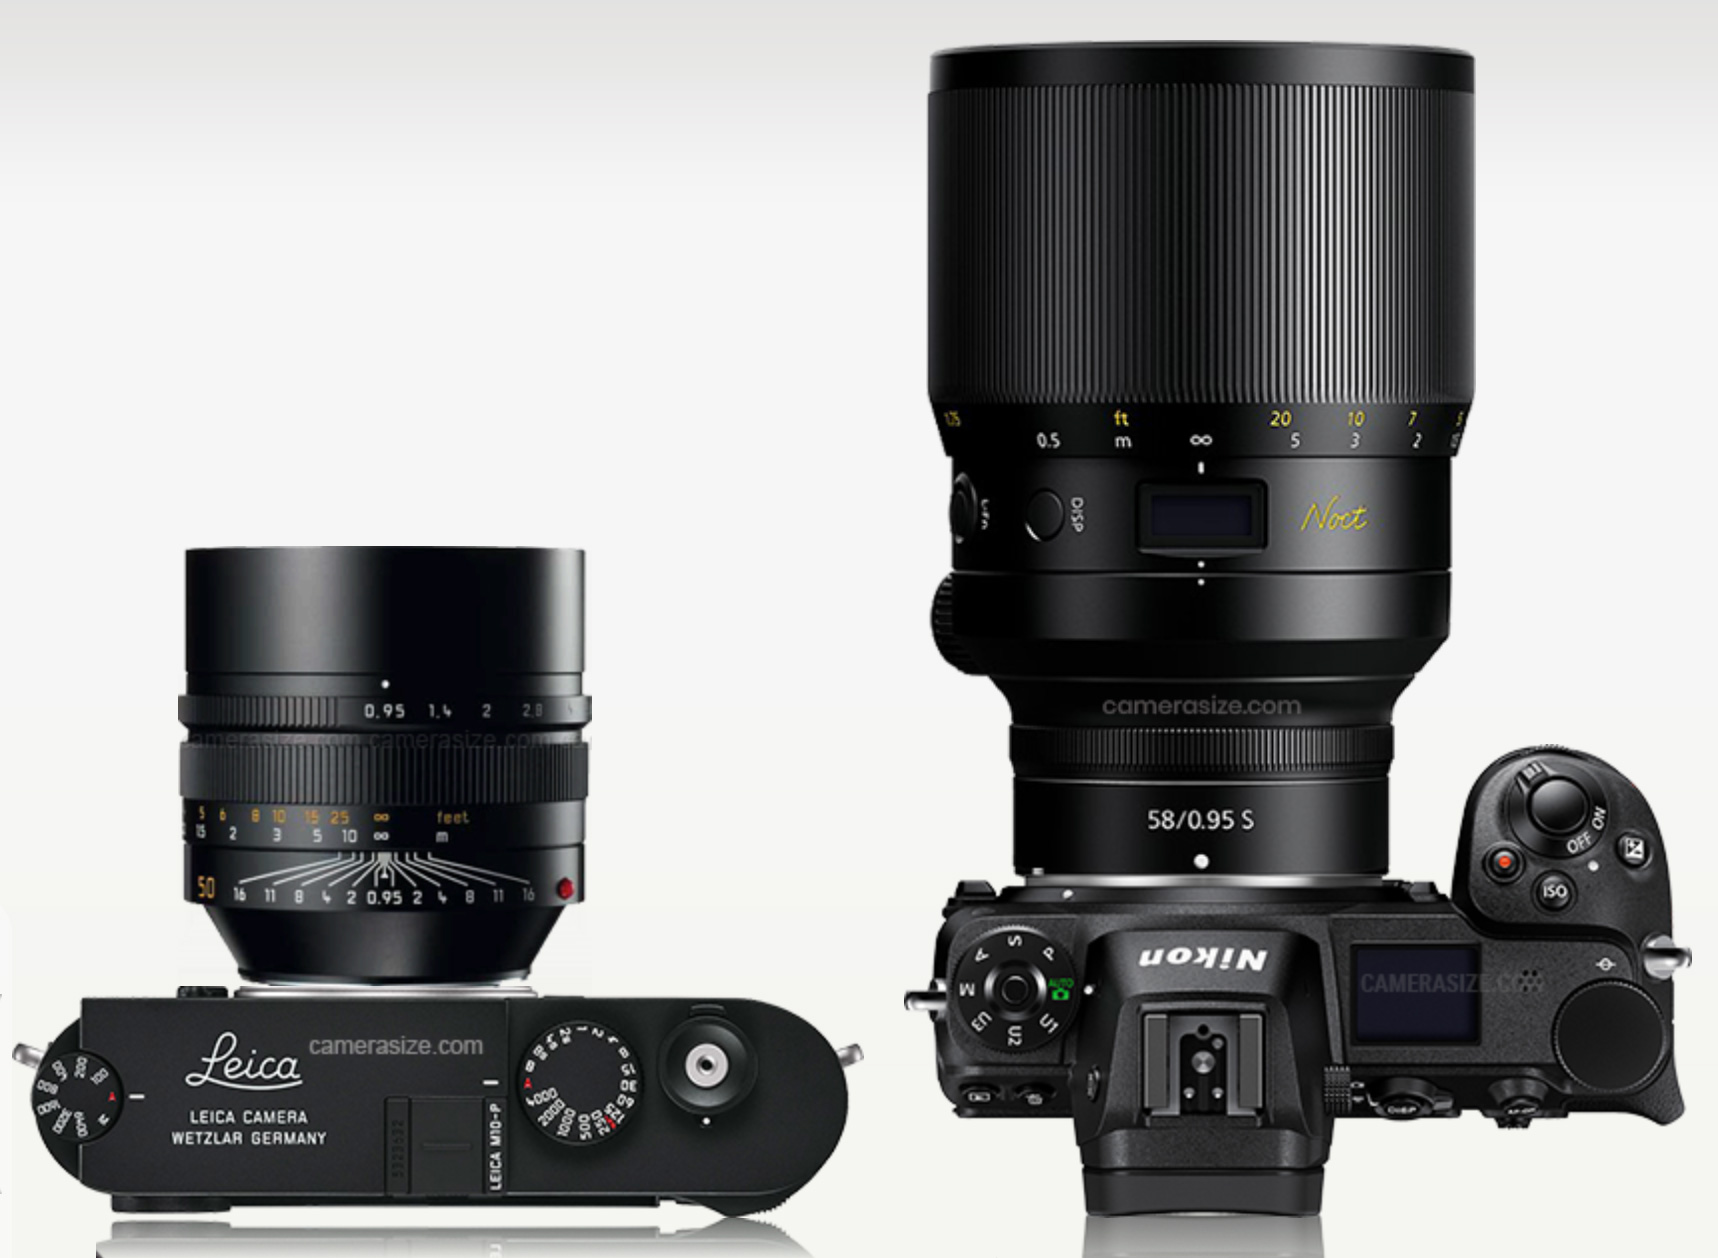 Lieca-Noctilux-lens-vs-Nikon-Noct-lens.jpg